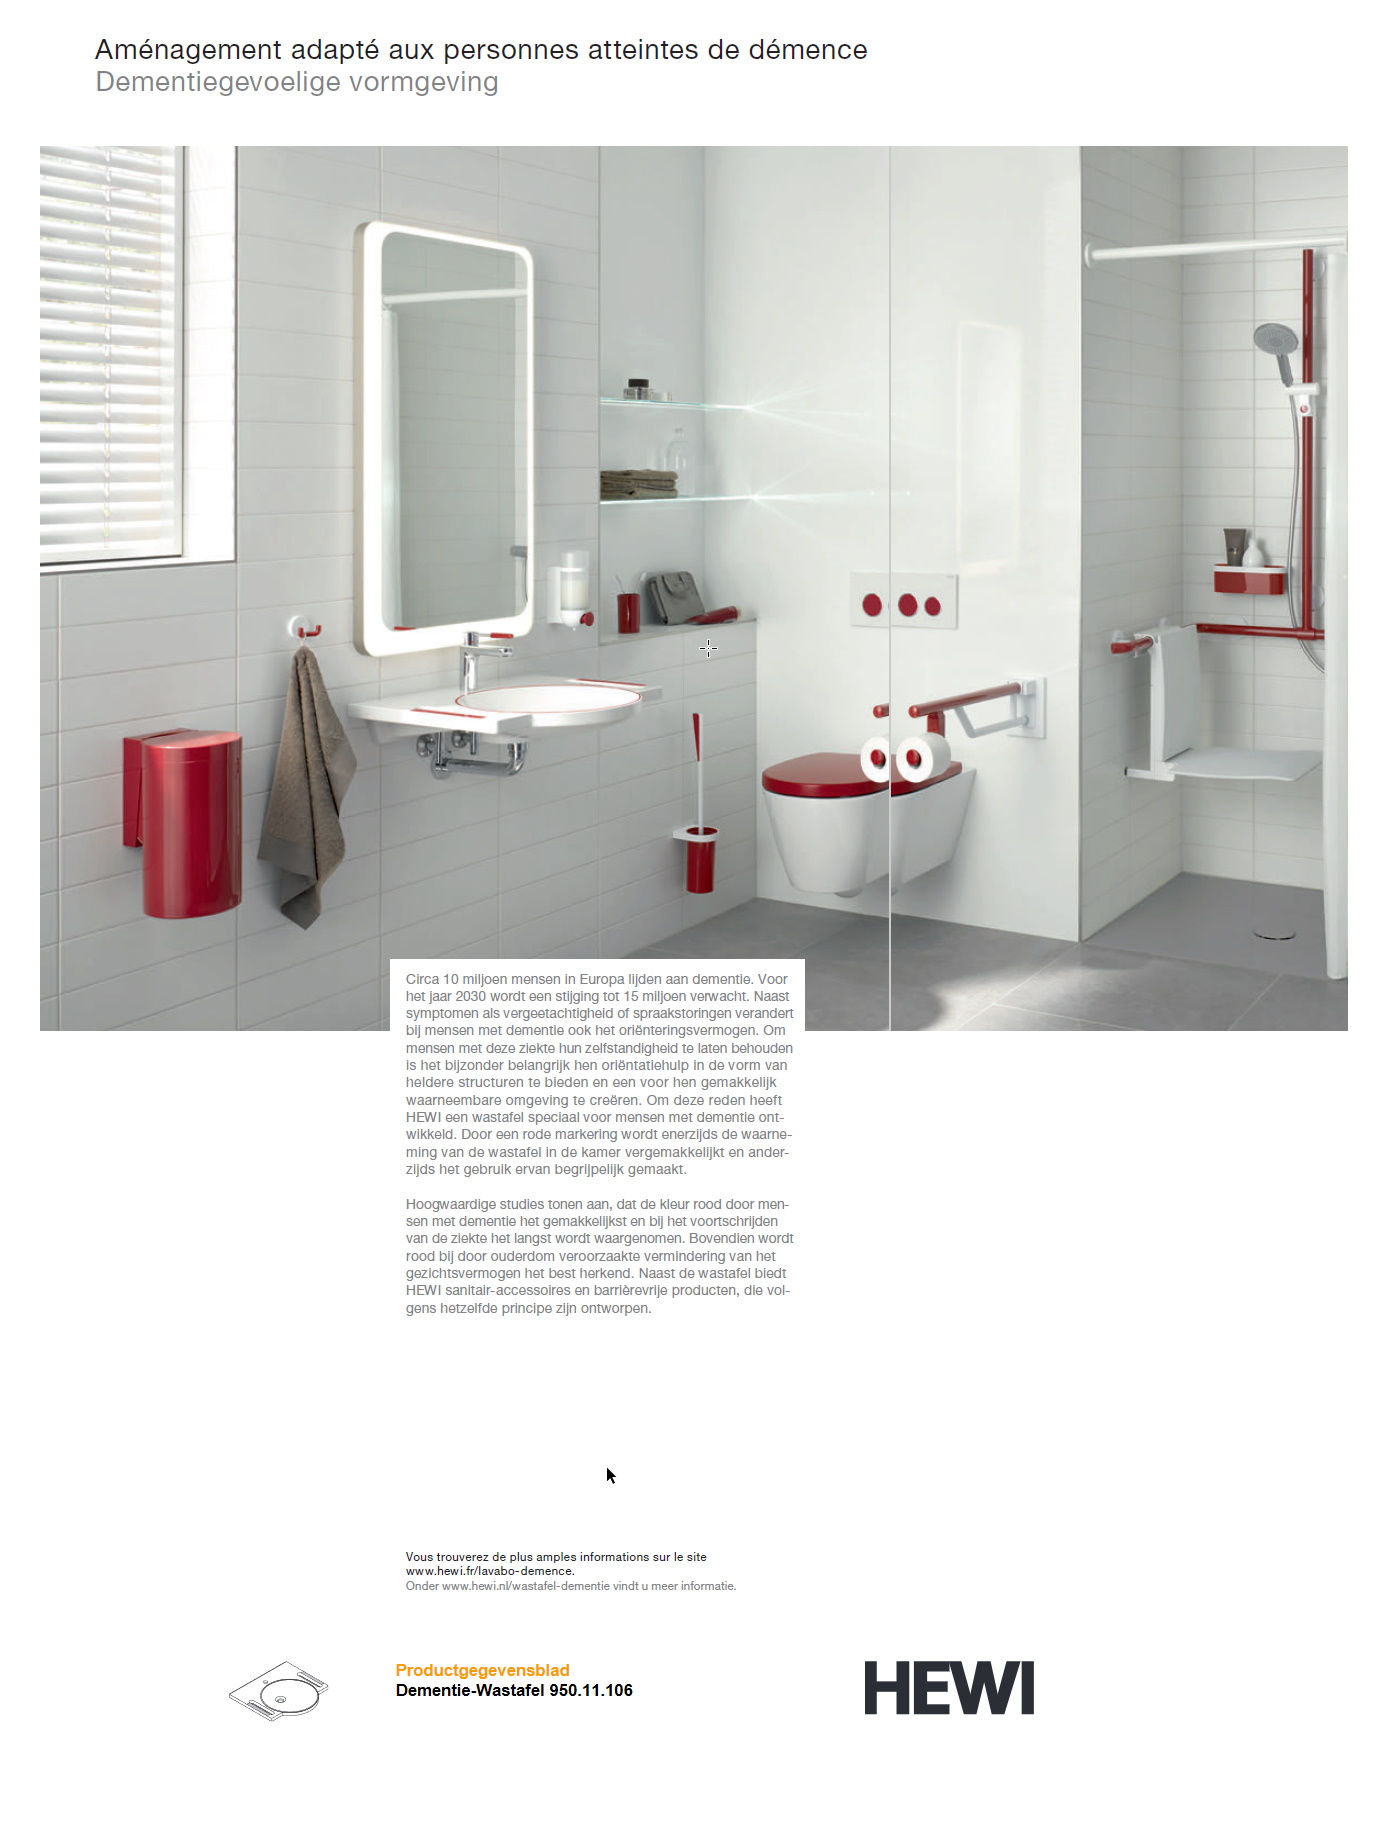 toegevoegd document 3 van Hewi Wastafel dementie /  Dementiegevoelige vormgeving badkamer  